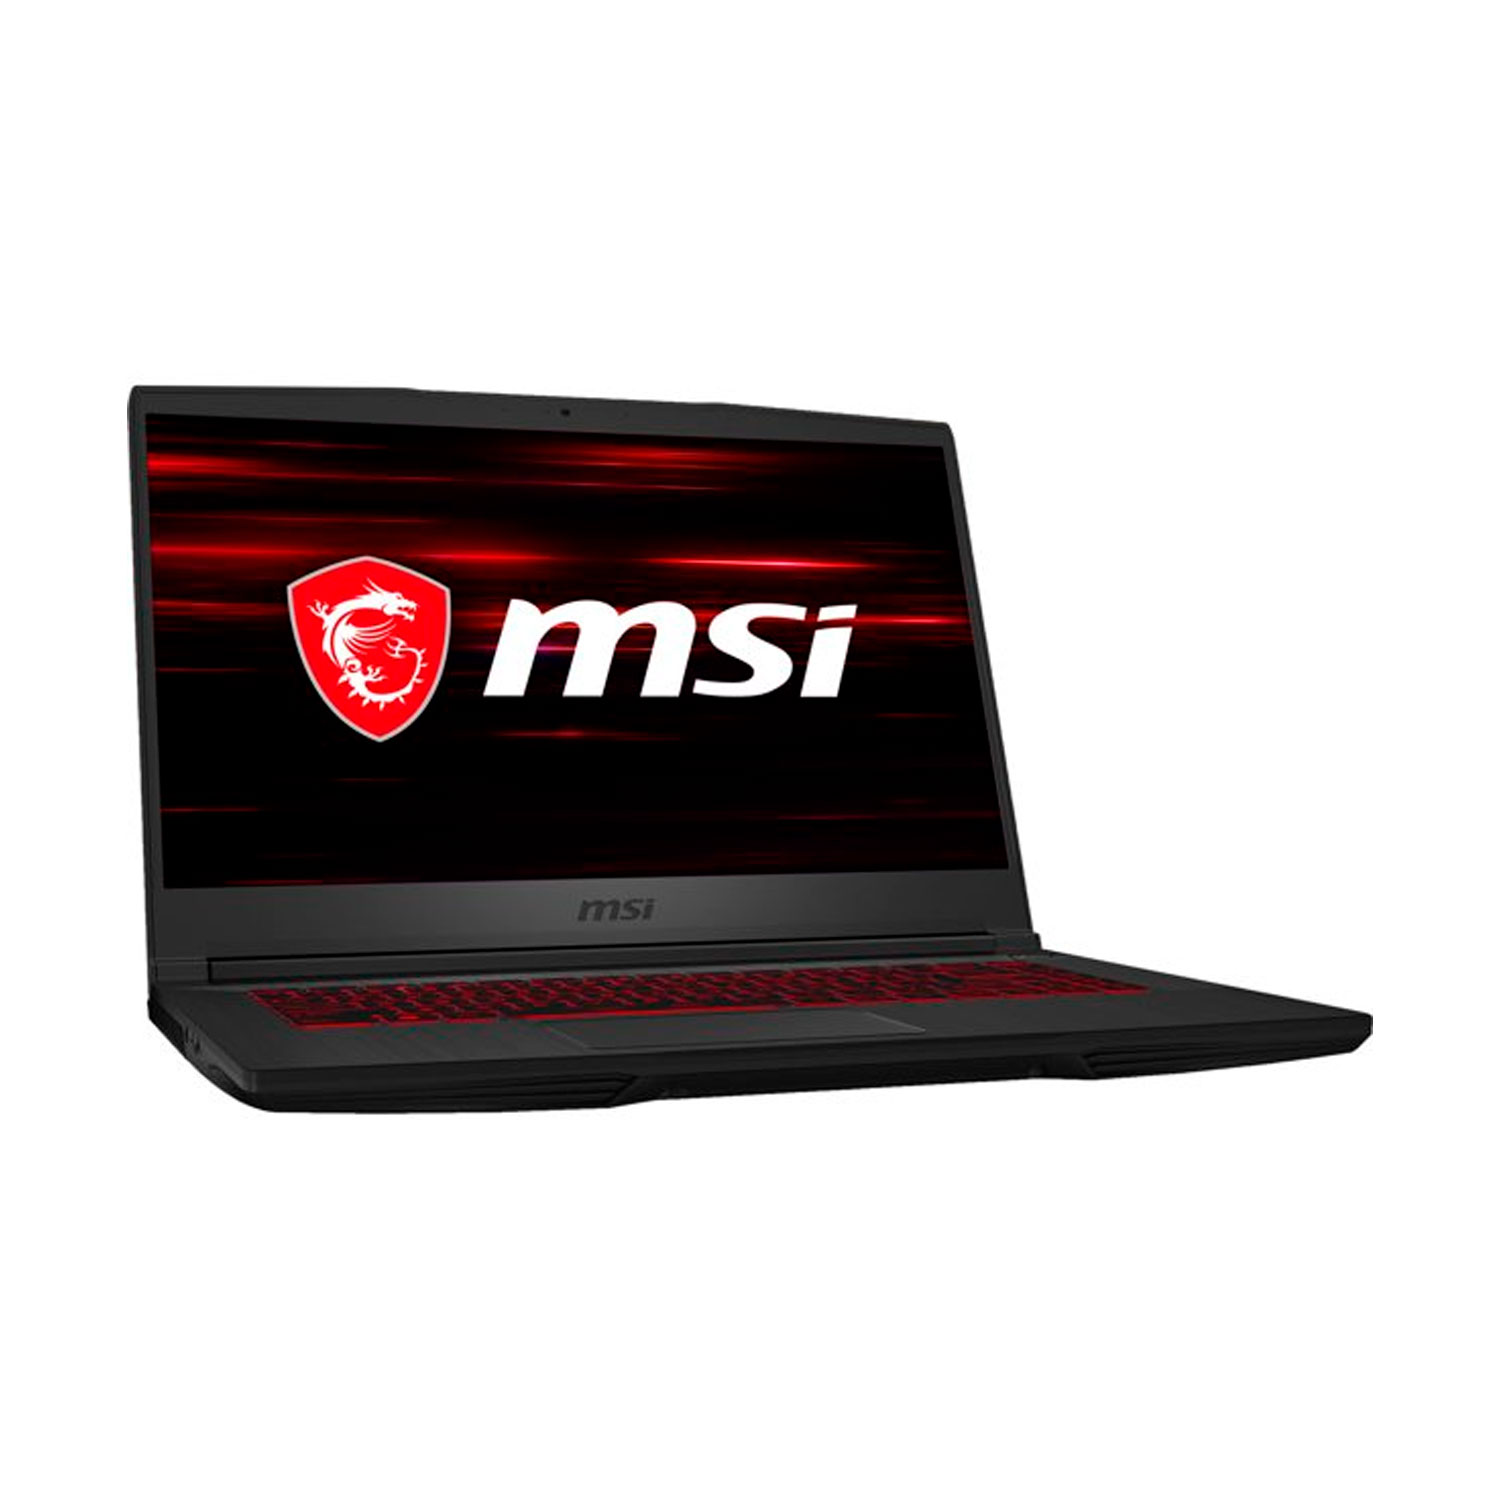 Notebook MSI GF65656 i7-9750H/ 8GB/ 512GB/ 1660TI 6GB/ Windows 10